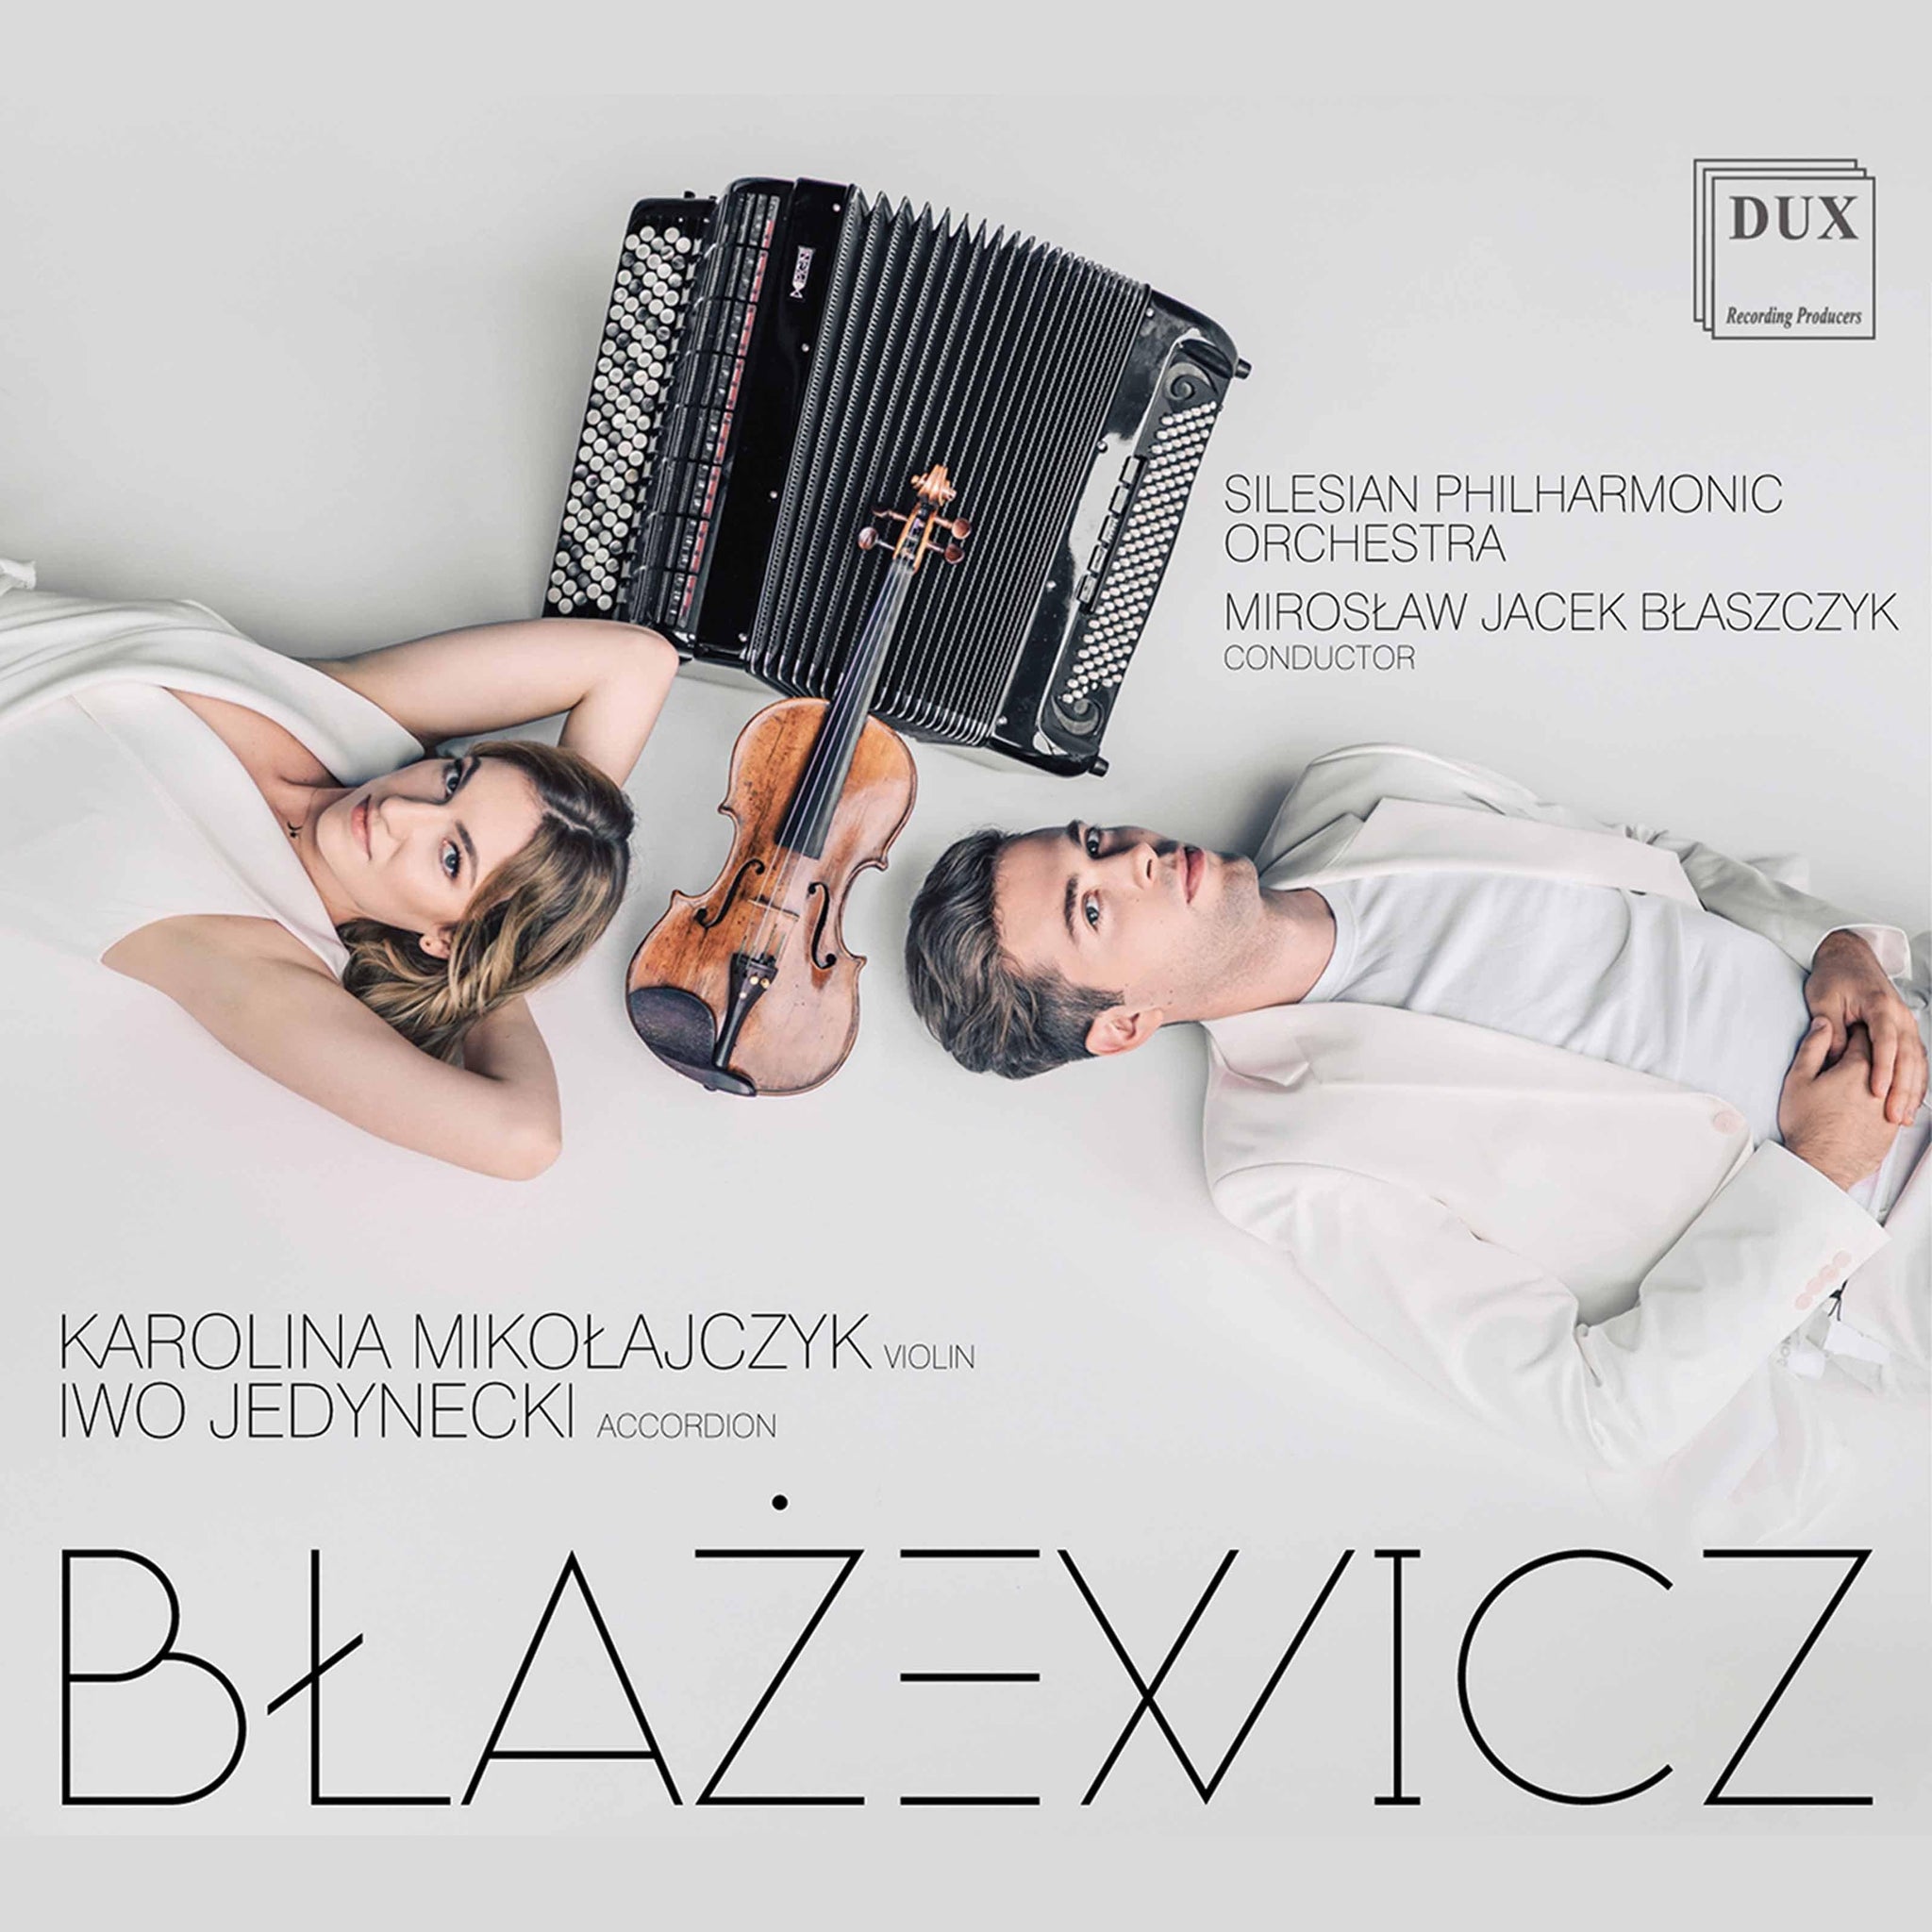 Błażewicz: Accordion Works - ArkivMusic